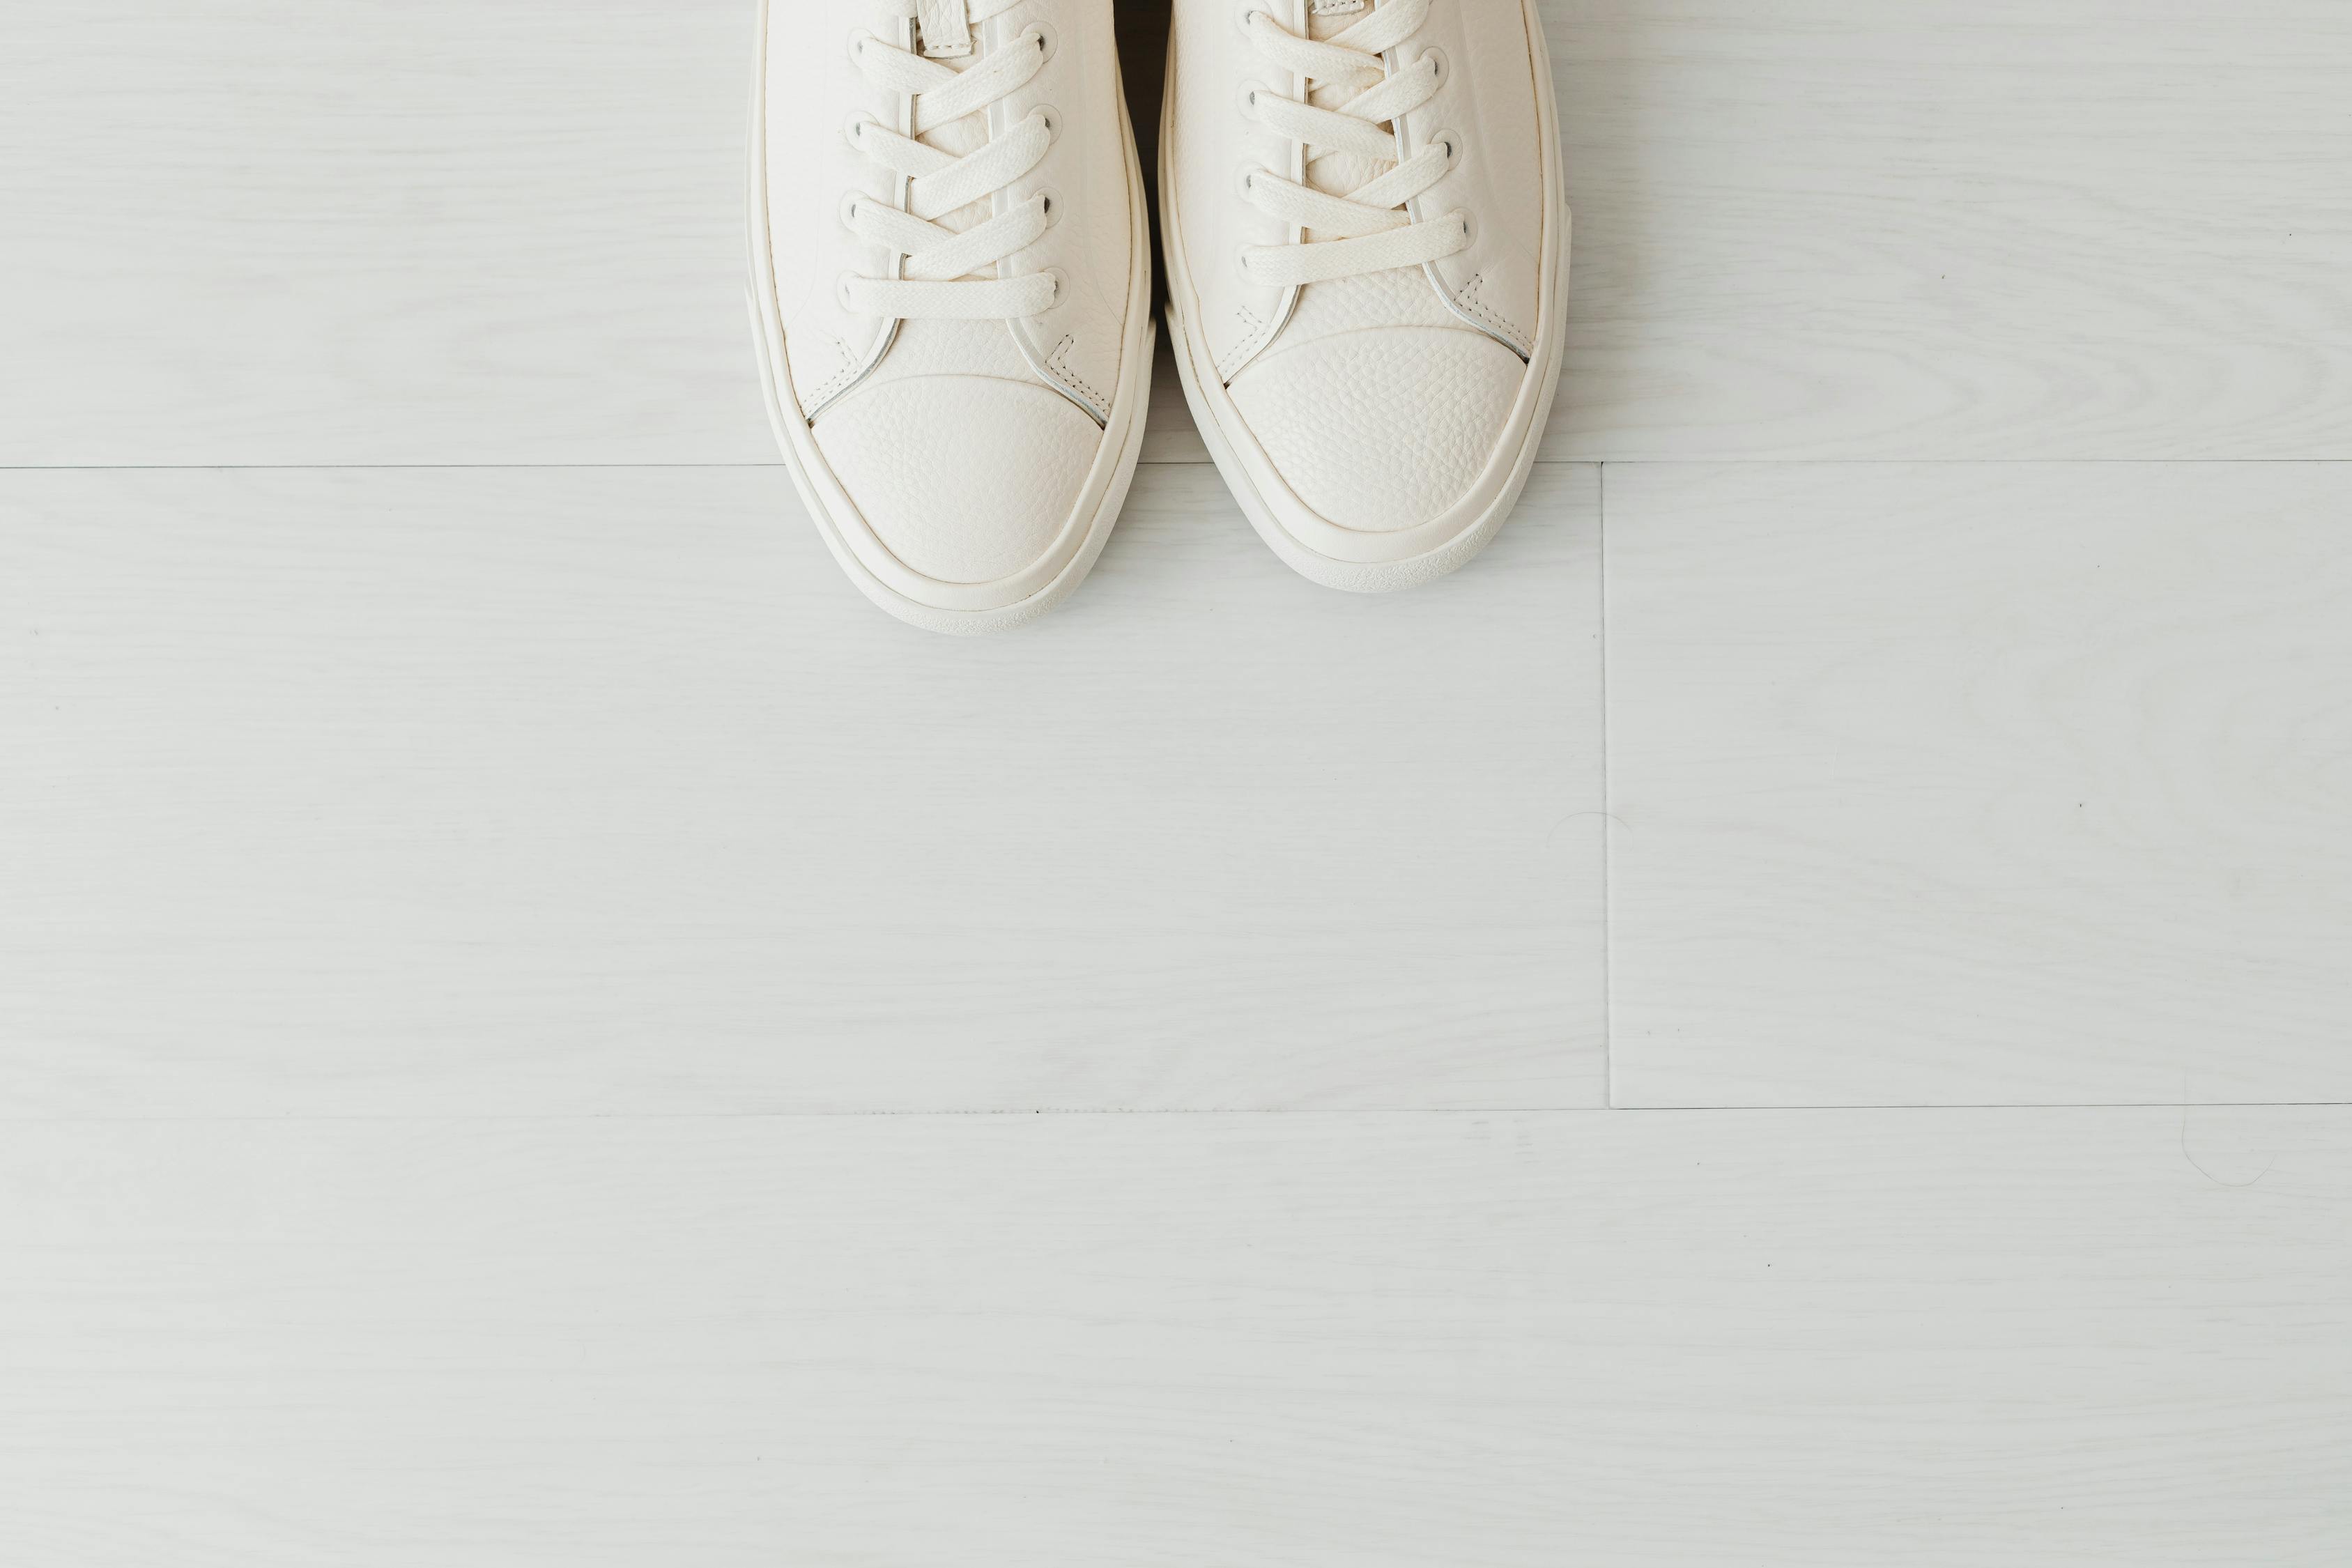 White Leather Shoes on White Floor Tiles · Free Stock Photo